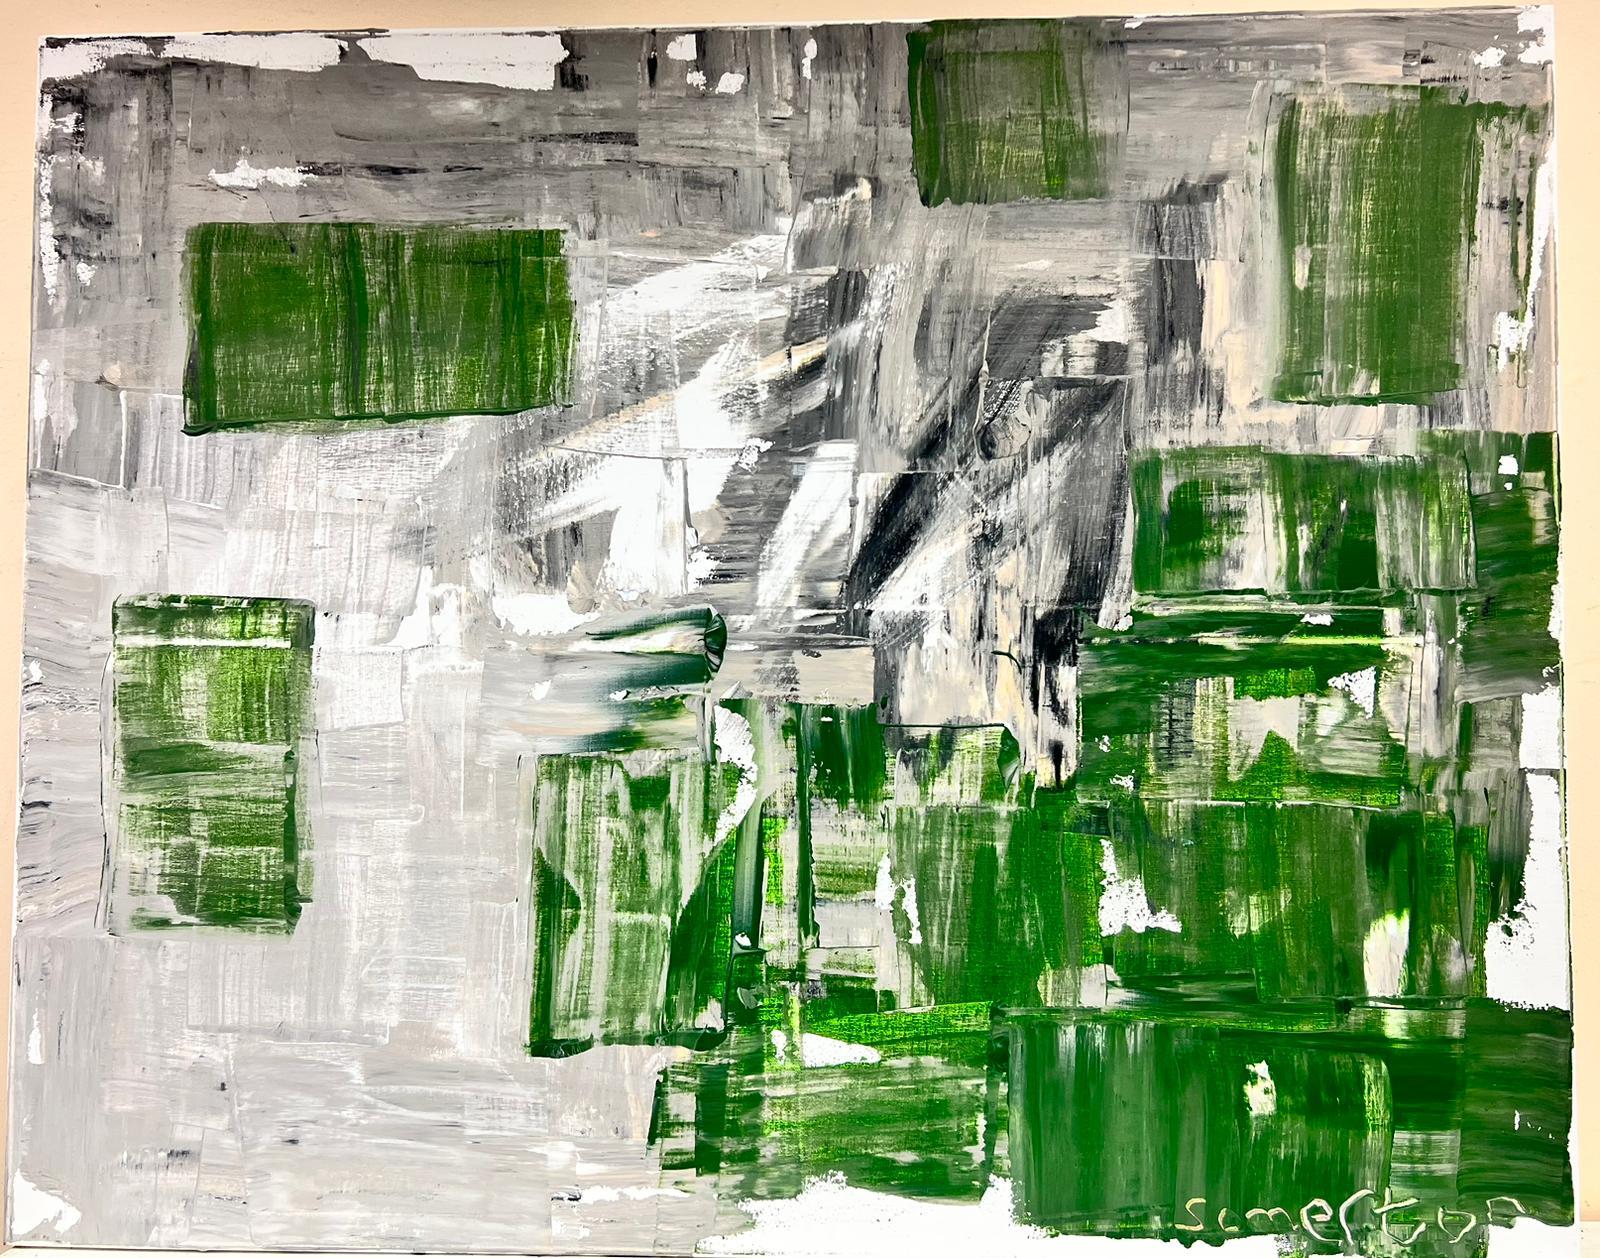 Grande peinture abstraite expressionniste britannique verte, noire, blanche et grise - Painting de Robert Somerton